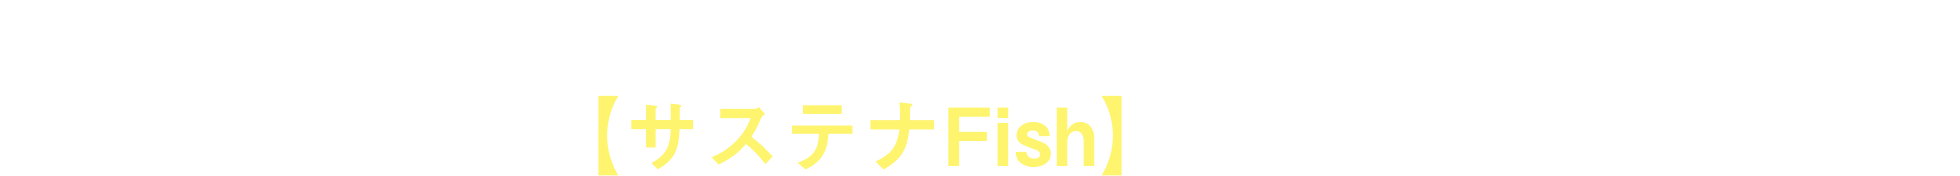 ヨンキュウはその答えとして、新ブランド【サステナFish】を提案します。